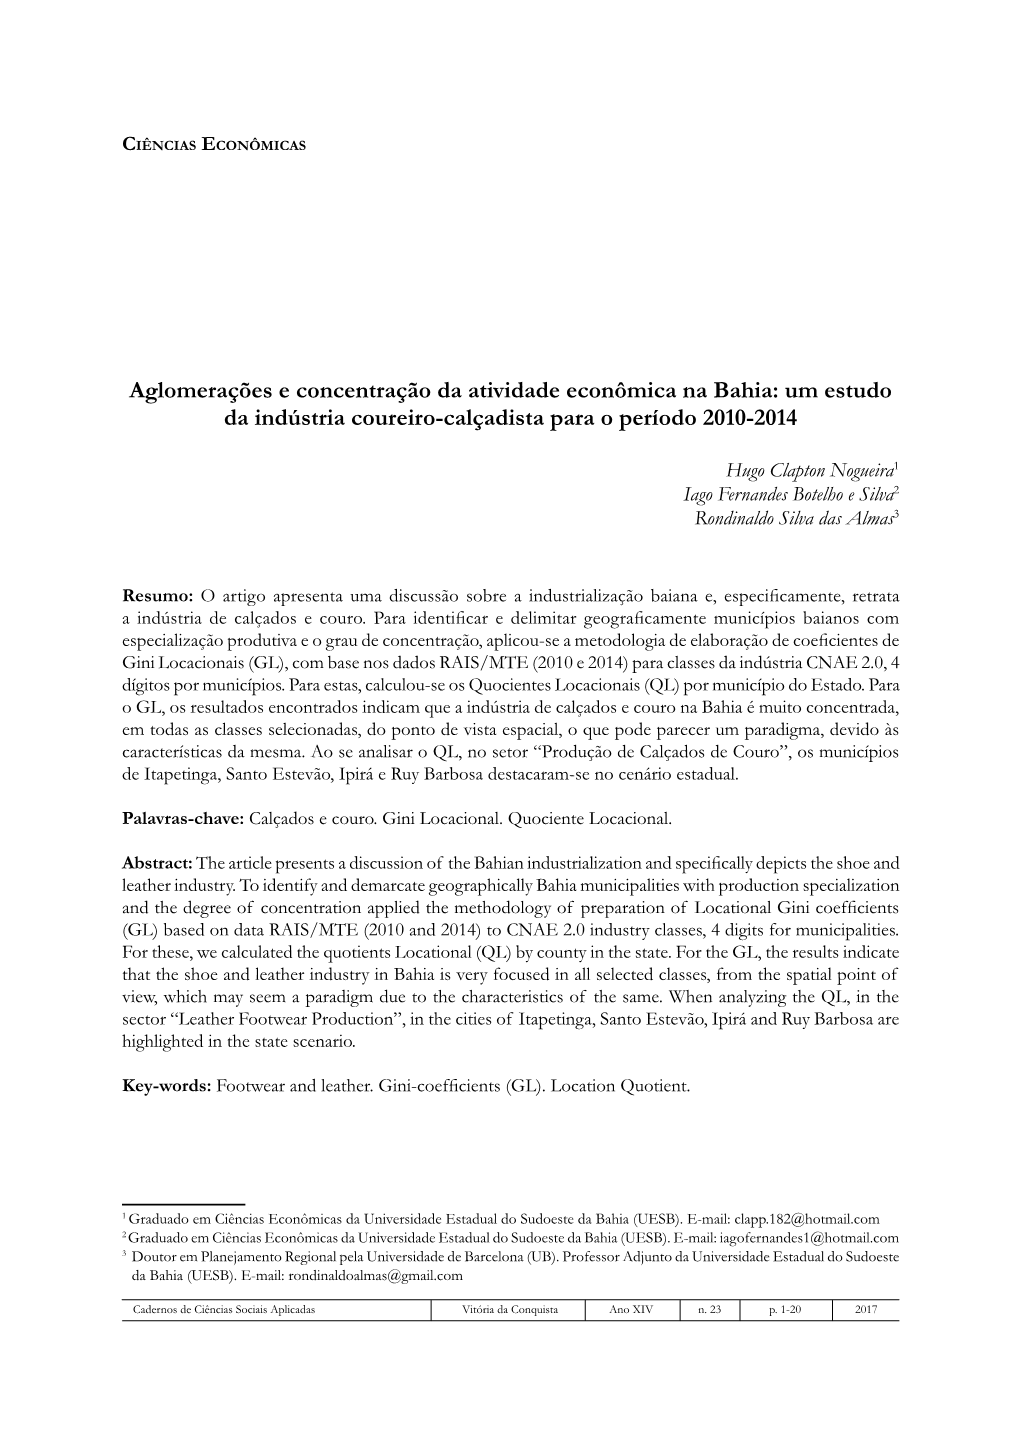 Aglomerações E Concentração Da Atividade Econômica Na Bahia: Um Estudo Da Indústria Coureiro-Calçadista Para O Período 2010-2014